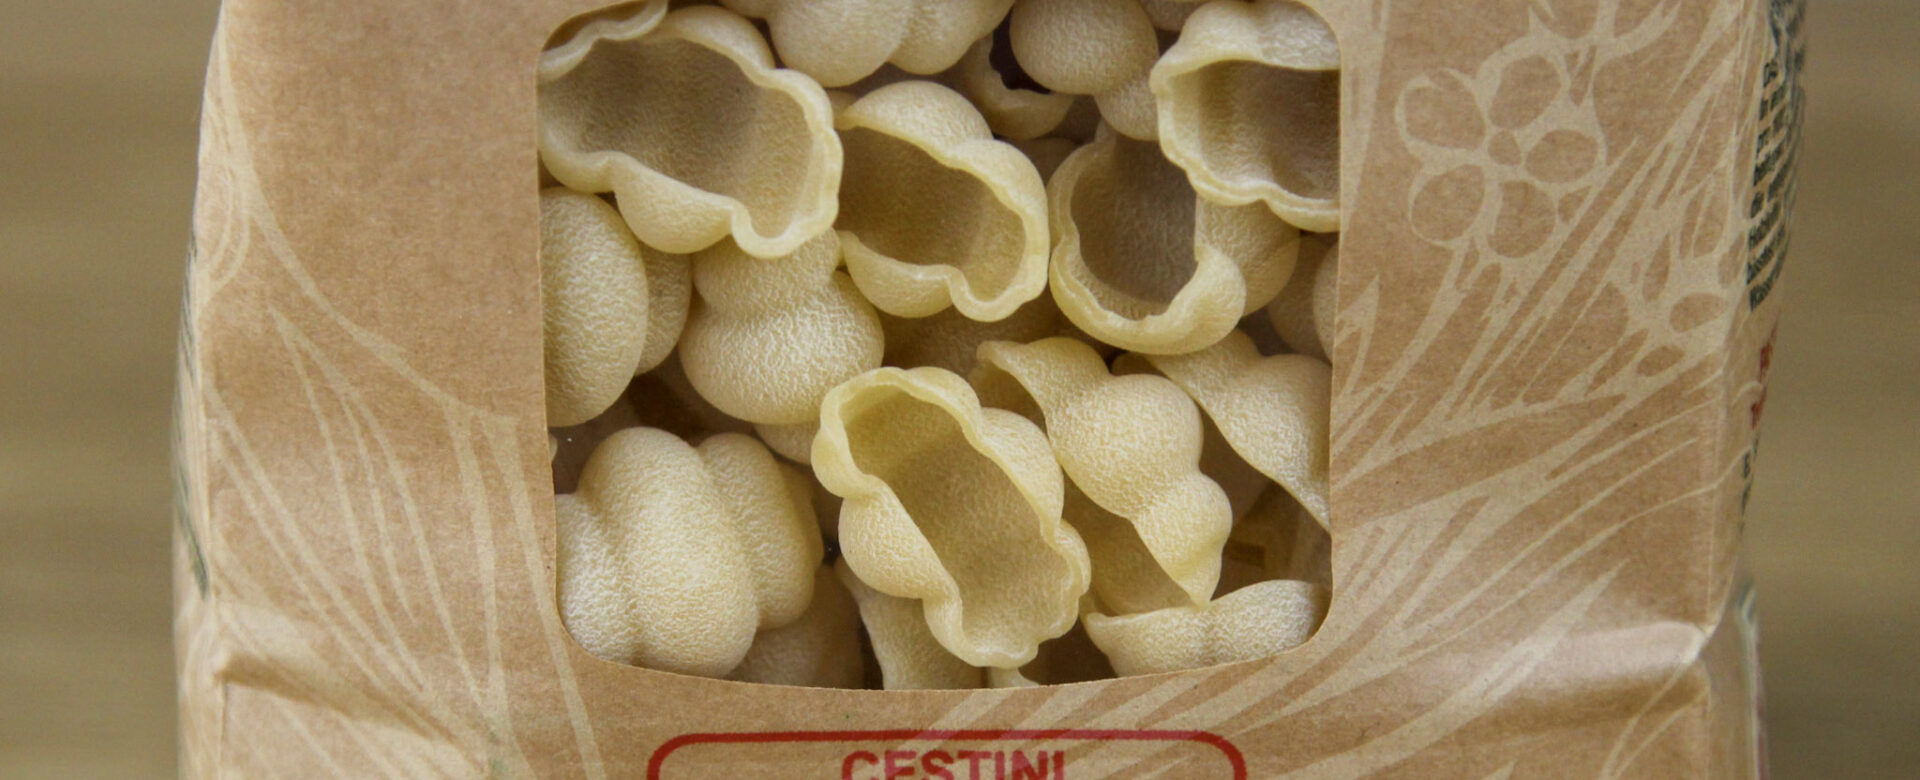 Cestini pasta